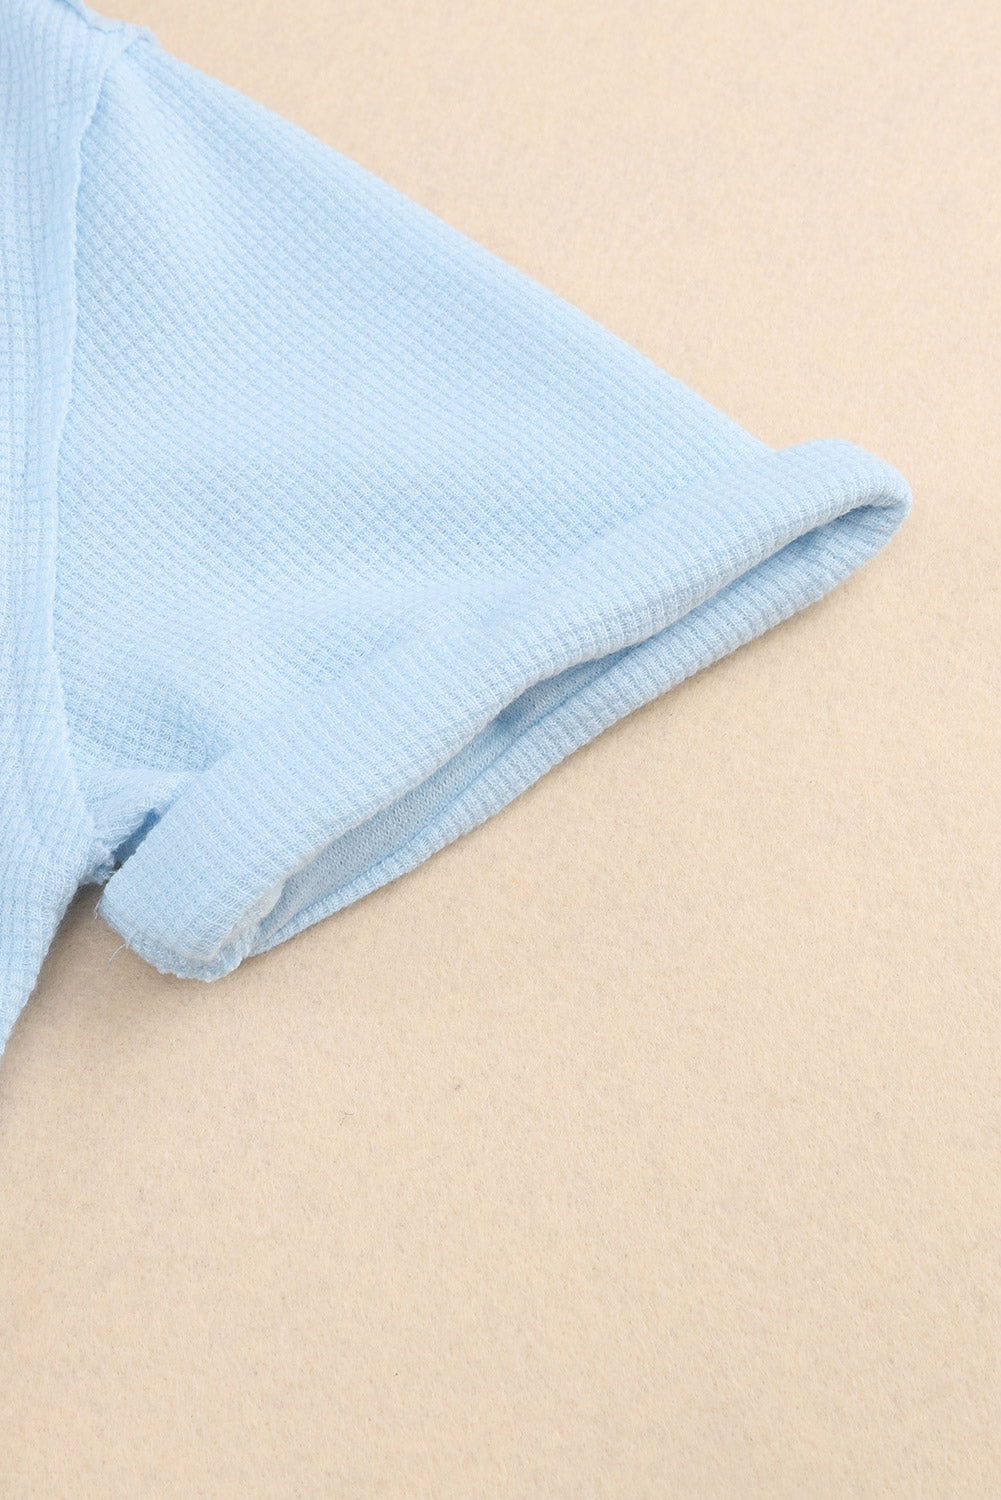 Chemise boutonnée à manches courtes en tricot gaufré délavé à l'acide bleu ciel